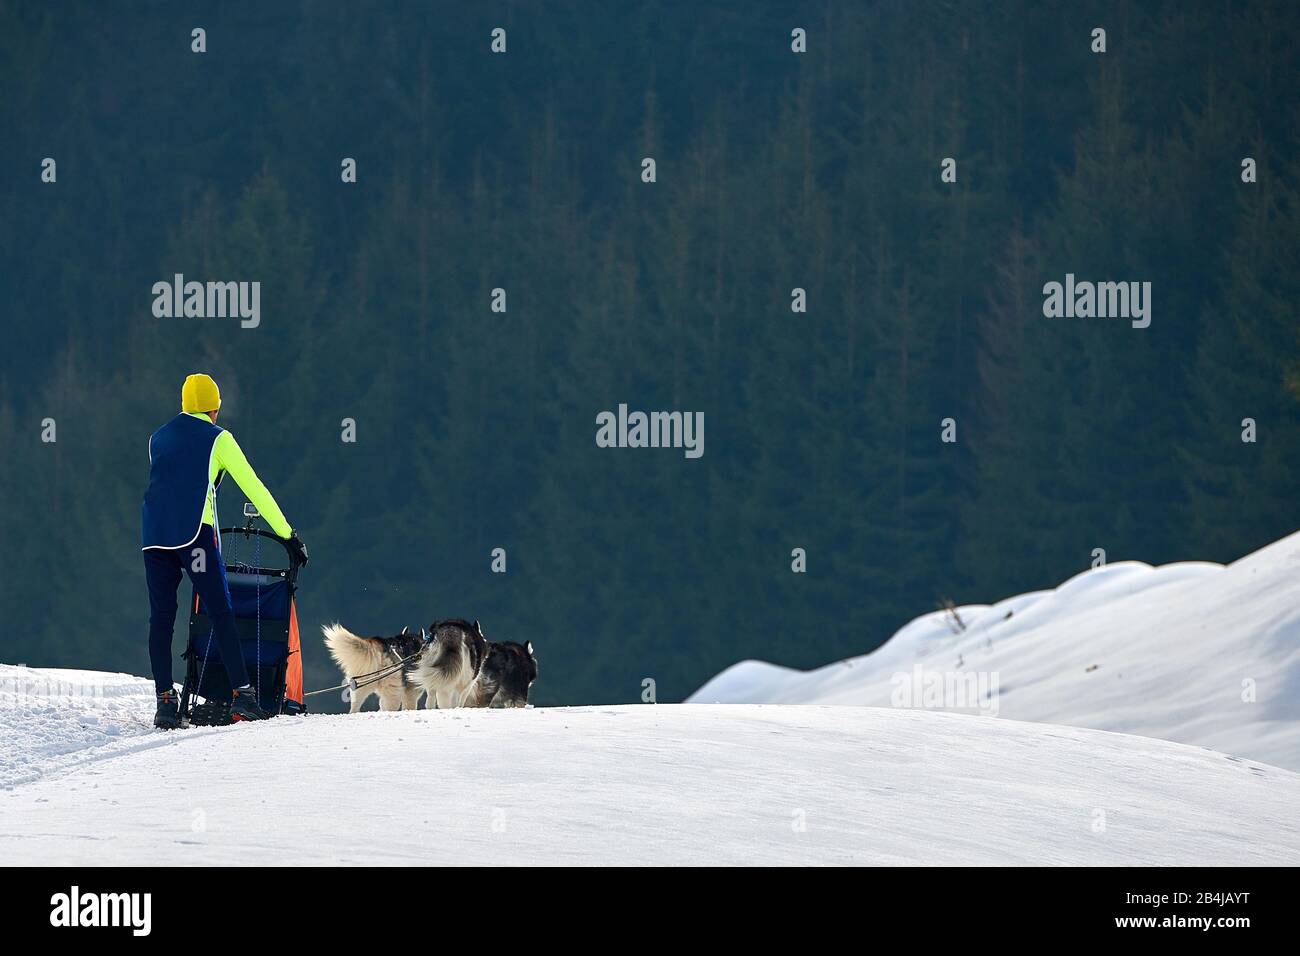 La comédie musicale sportive fait du traîneau à chiens une journée ensoleillée sur la neige lors de la compétition d'hiver à Tusnad, en Roumanie Banque D'Images